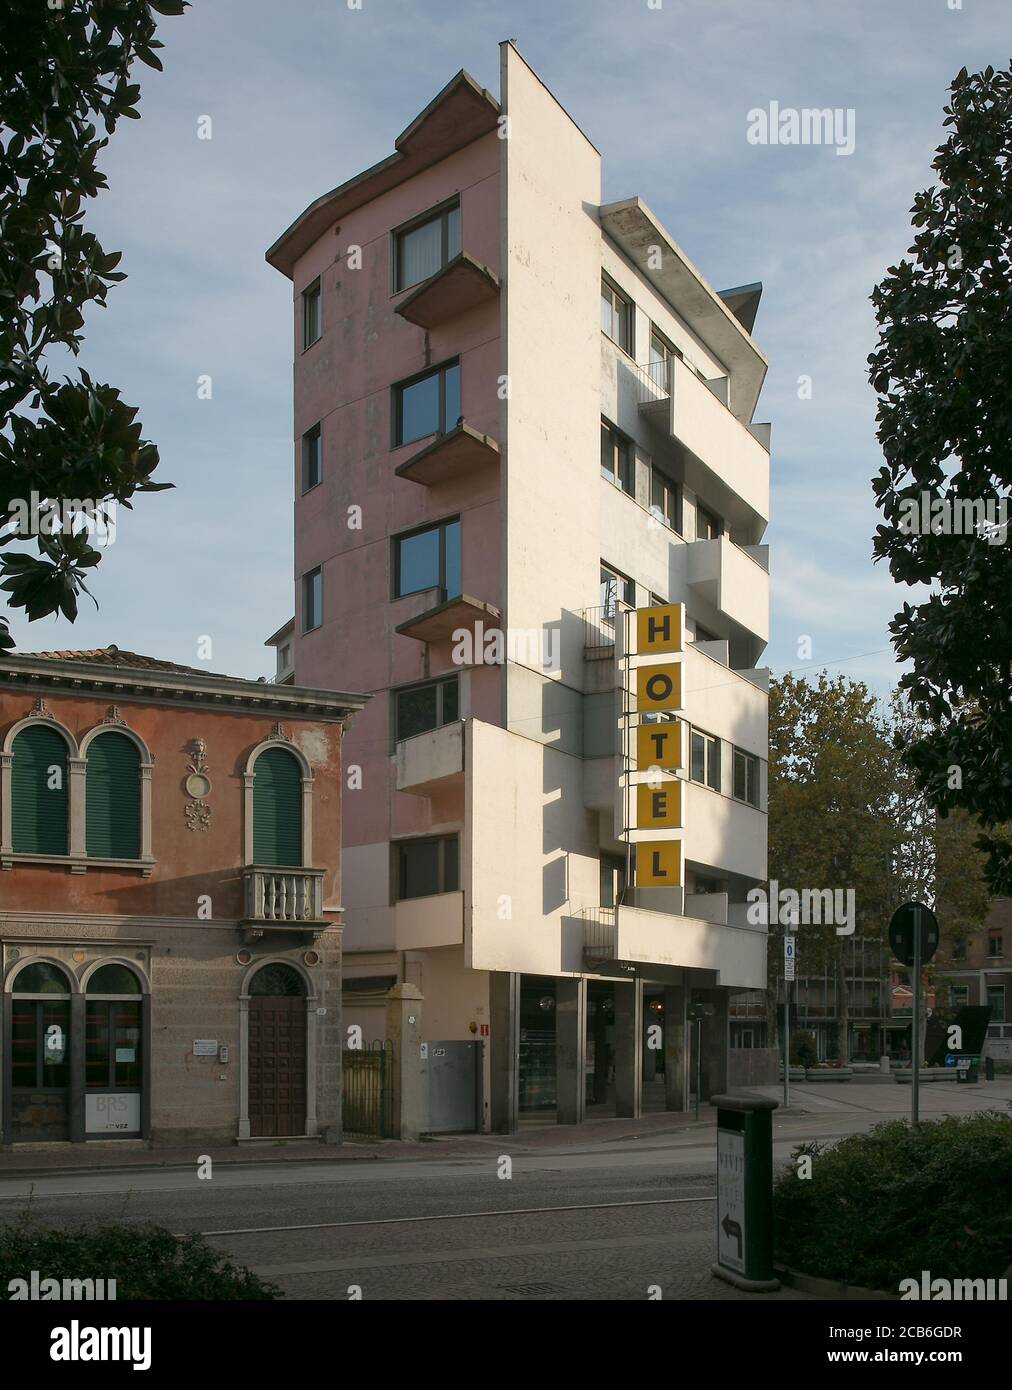 Mestre bei Venedig, Hotel Central, Bau der 1970er Jahre unvollendet - fehlende Brüstungen von Giebelbalkons Stock Photo